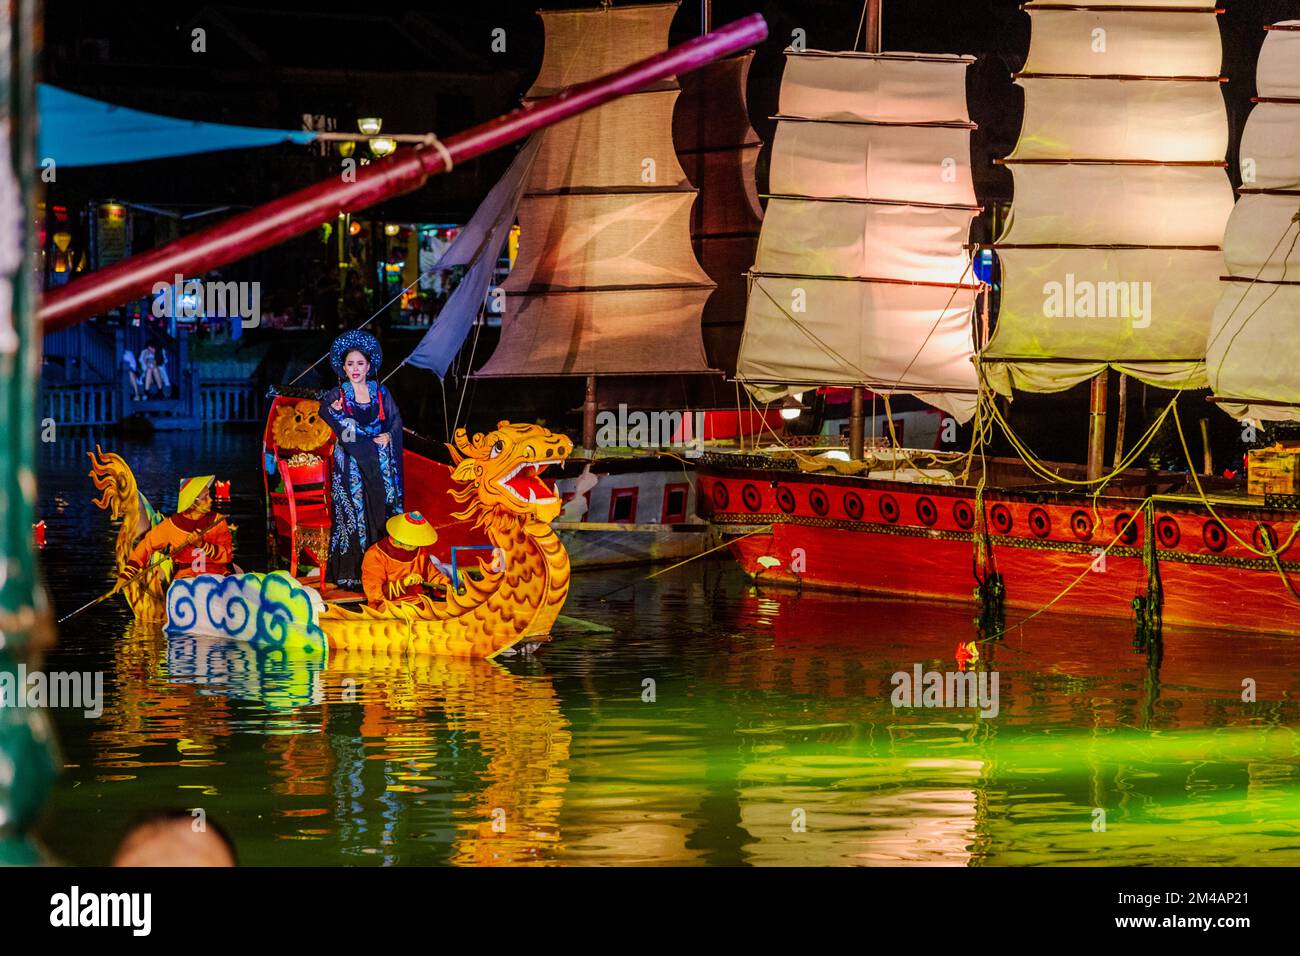 Sul fiume Thu Bon con una signora drago della barca a file che corre a riva accanto a vecchie navi a vela. Foto Stock